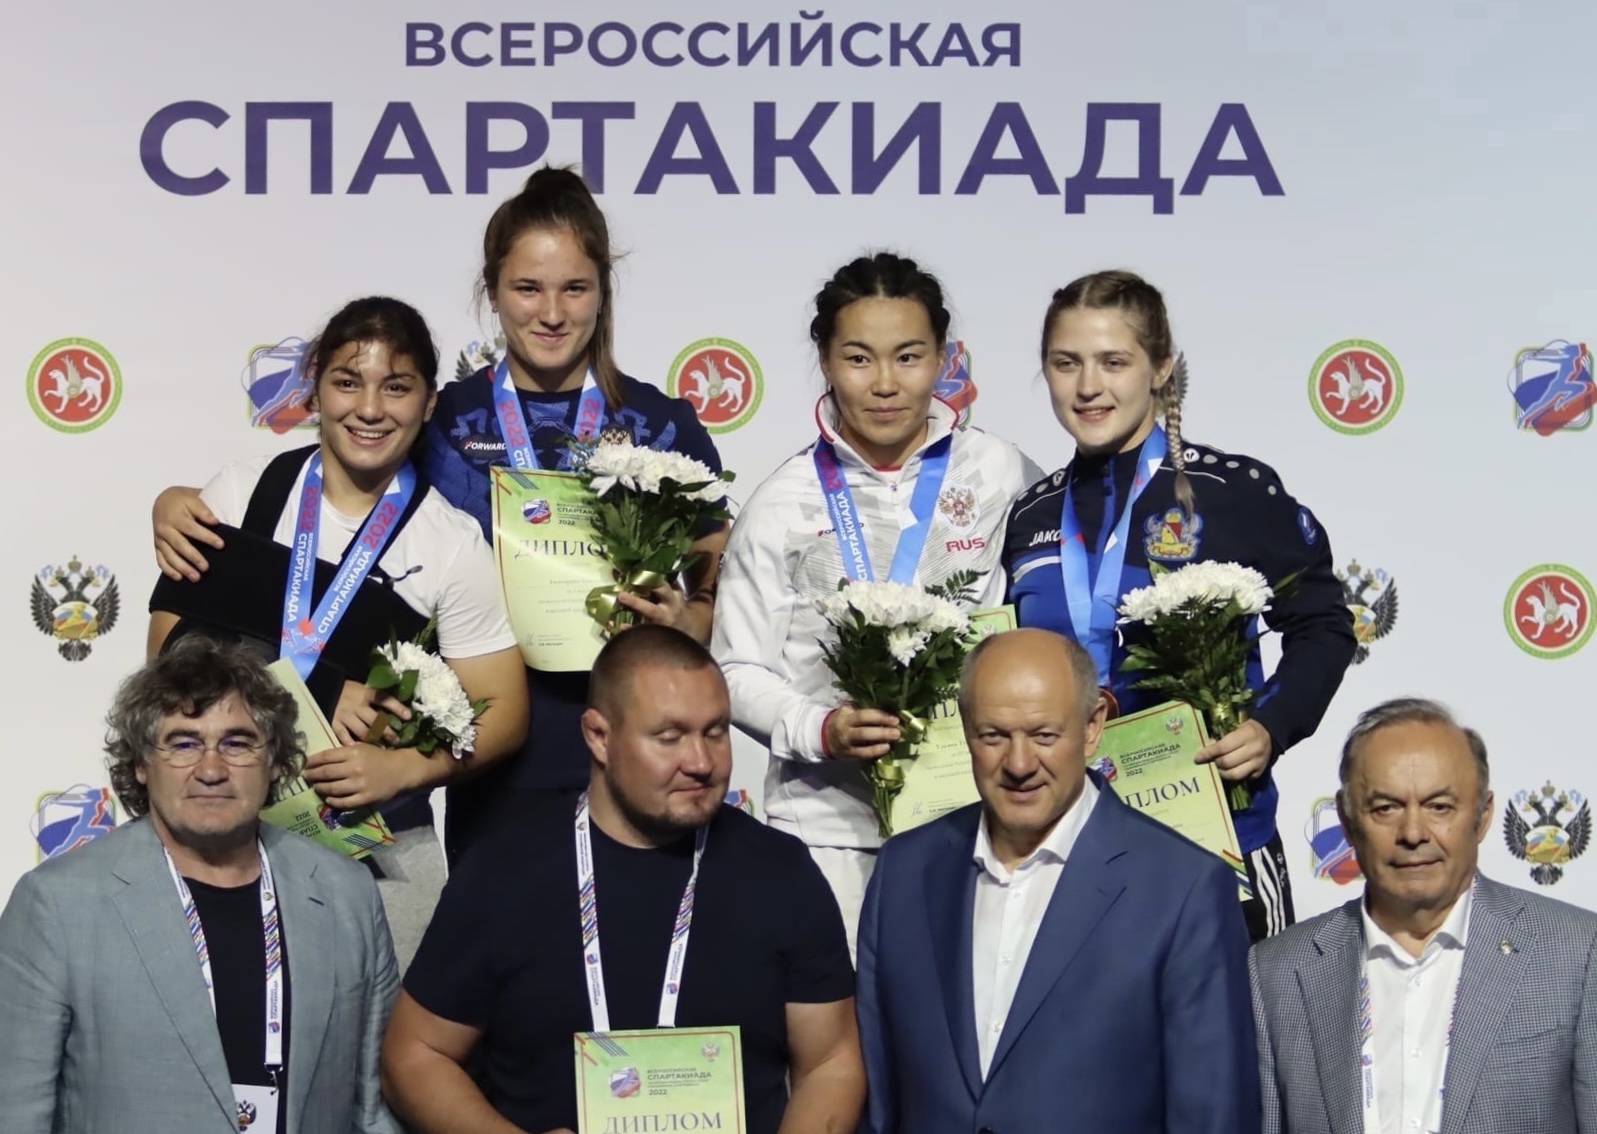 Ирина Ологонова и Ульяна Тукуренова - бронзовые призёры Всероссийской спартакиады среди сильнейших спортсменов